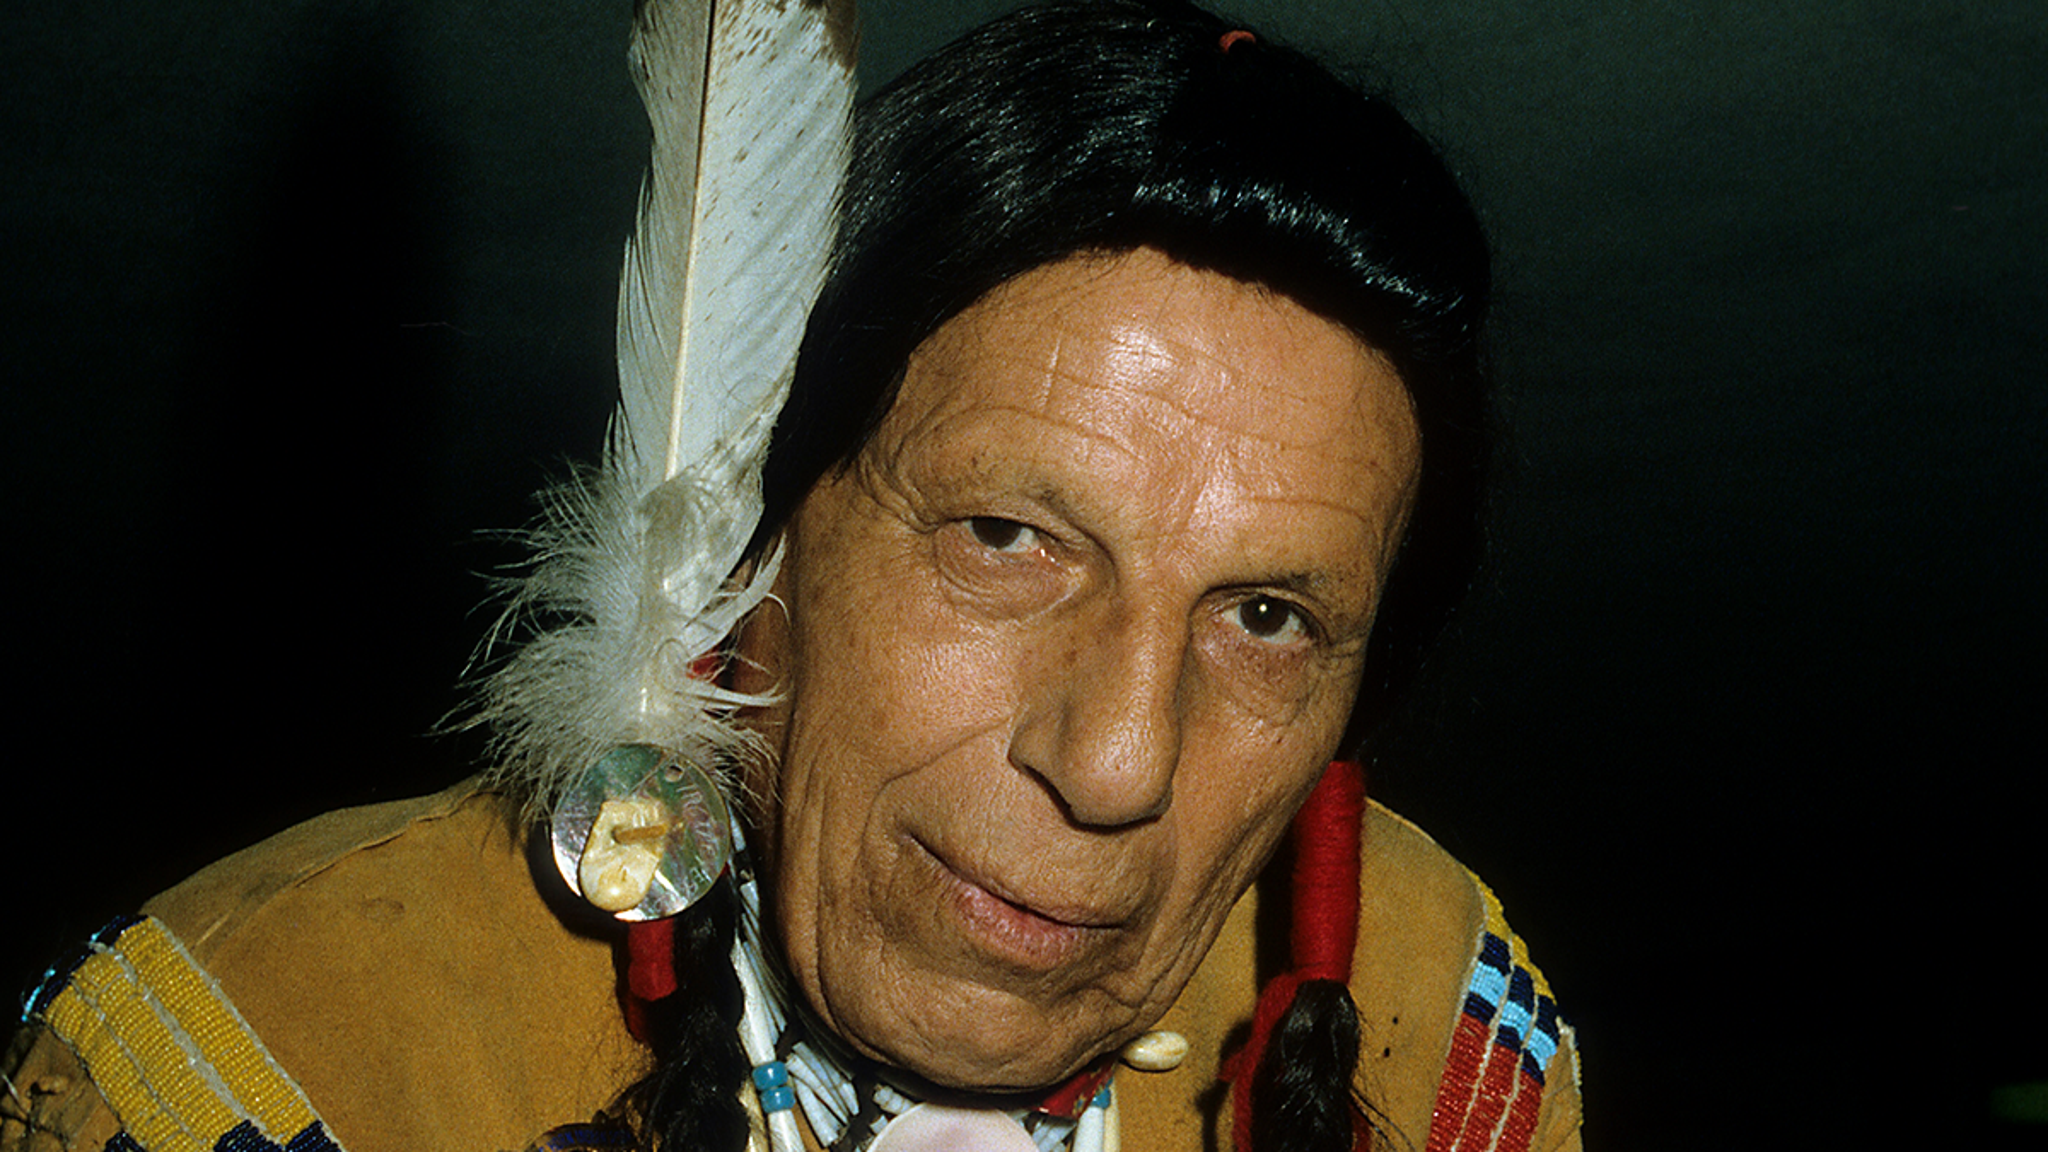 インディアン・クライングの引退が発表され、権利はネイティブ・グループに譲渡された